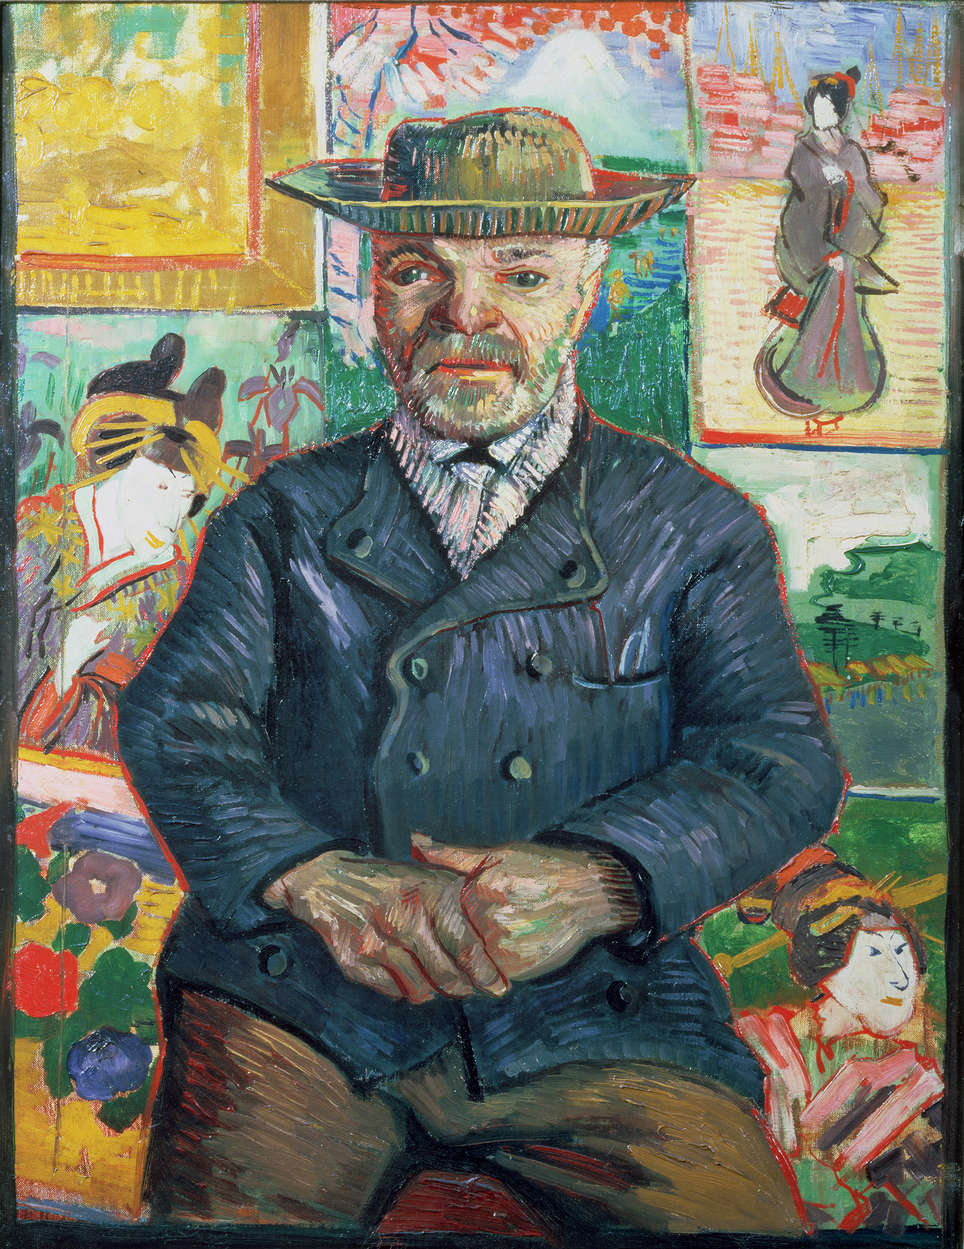             Fotomurali "Pere Tanguy" di Vincent van Gogh
        